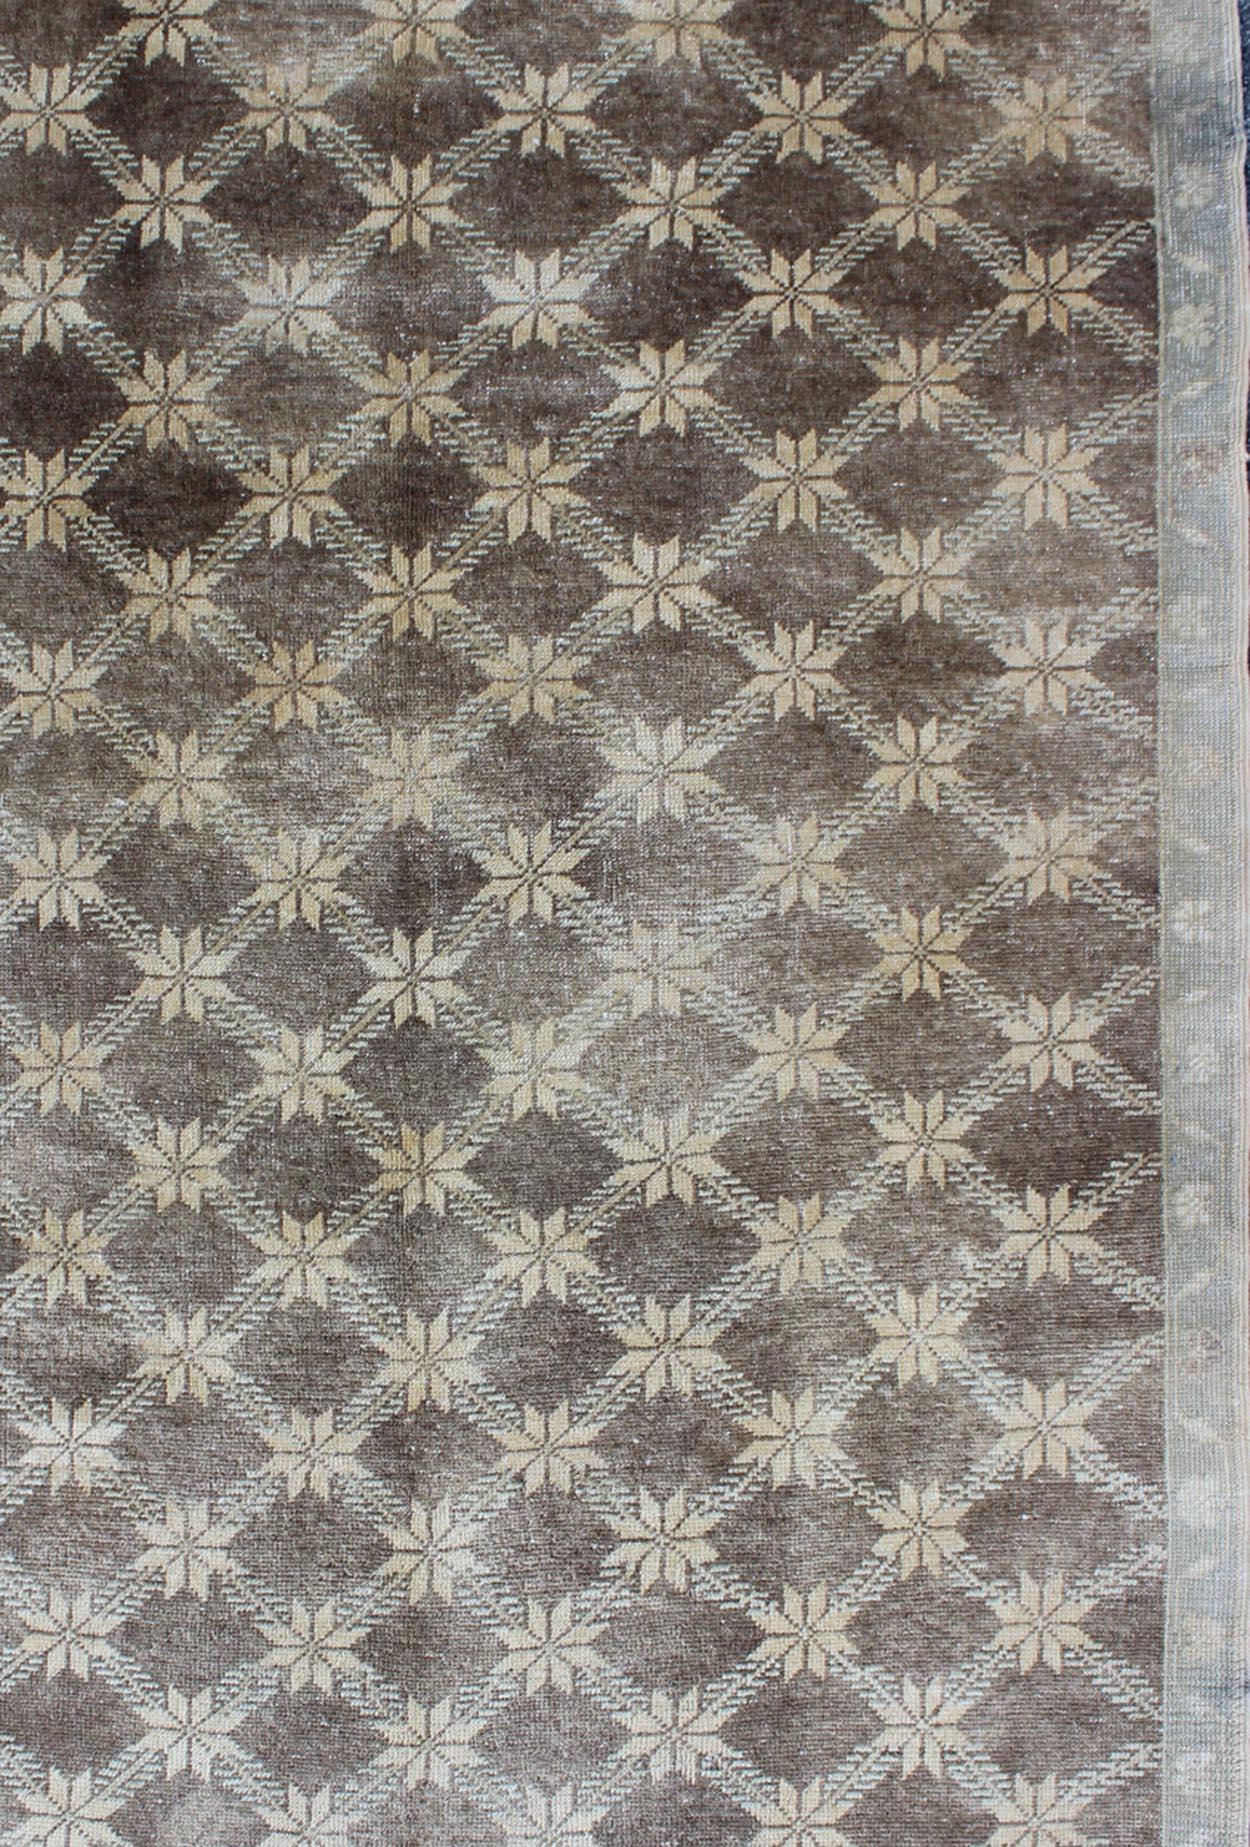 Maße: 5 x 7'10

Das Design dieses schönen alten Oushak-Teppichs aus der Türkei aus der Mitte des 20. Auf dem braunen Hintergrund befindet sich ein cremefarbenes Gittermuster, das mit Blumenmotiven verziert ist. Eine taupefarbene Blumenbordüre